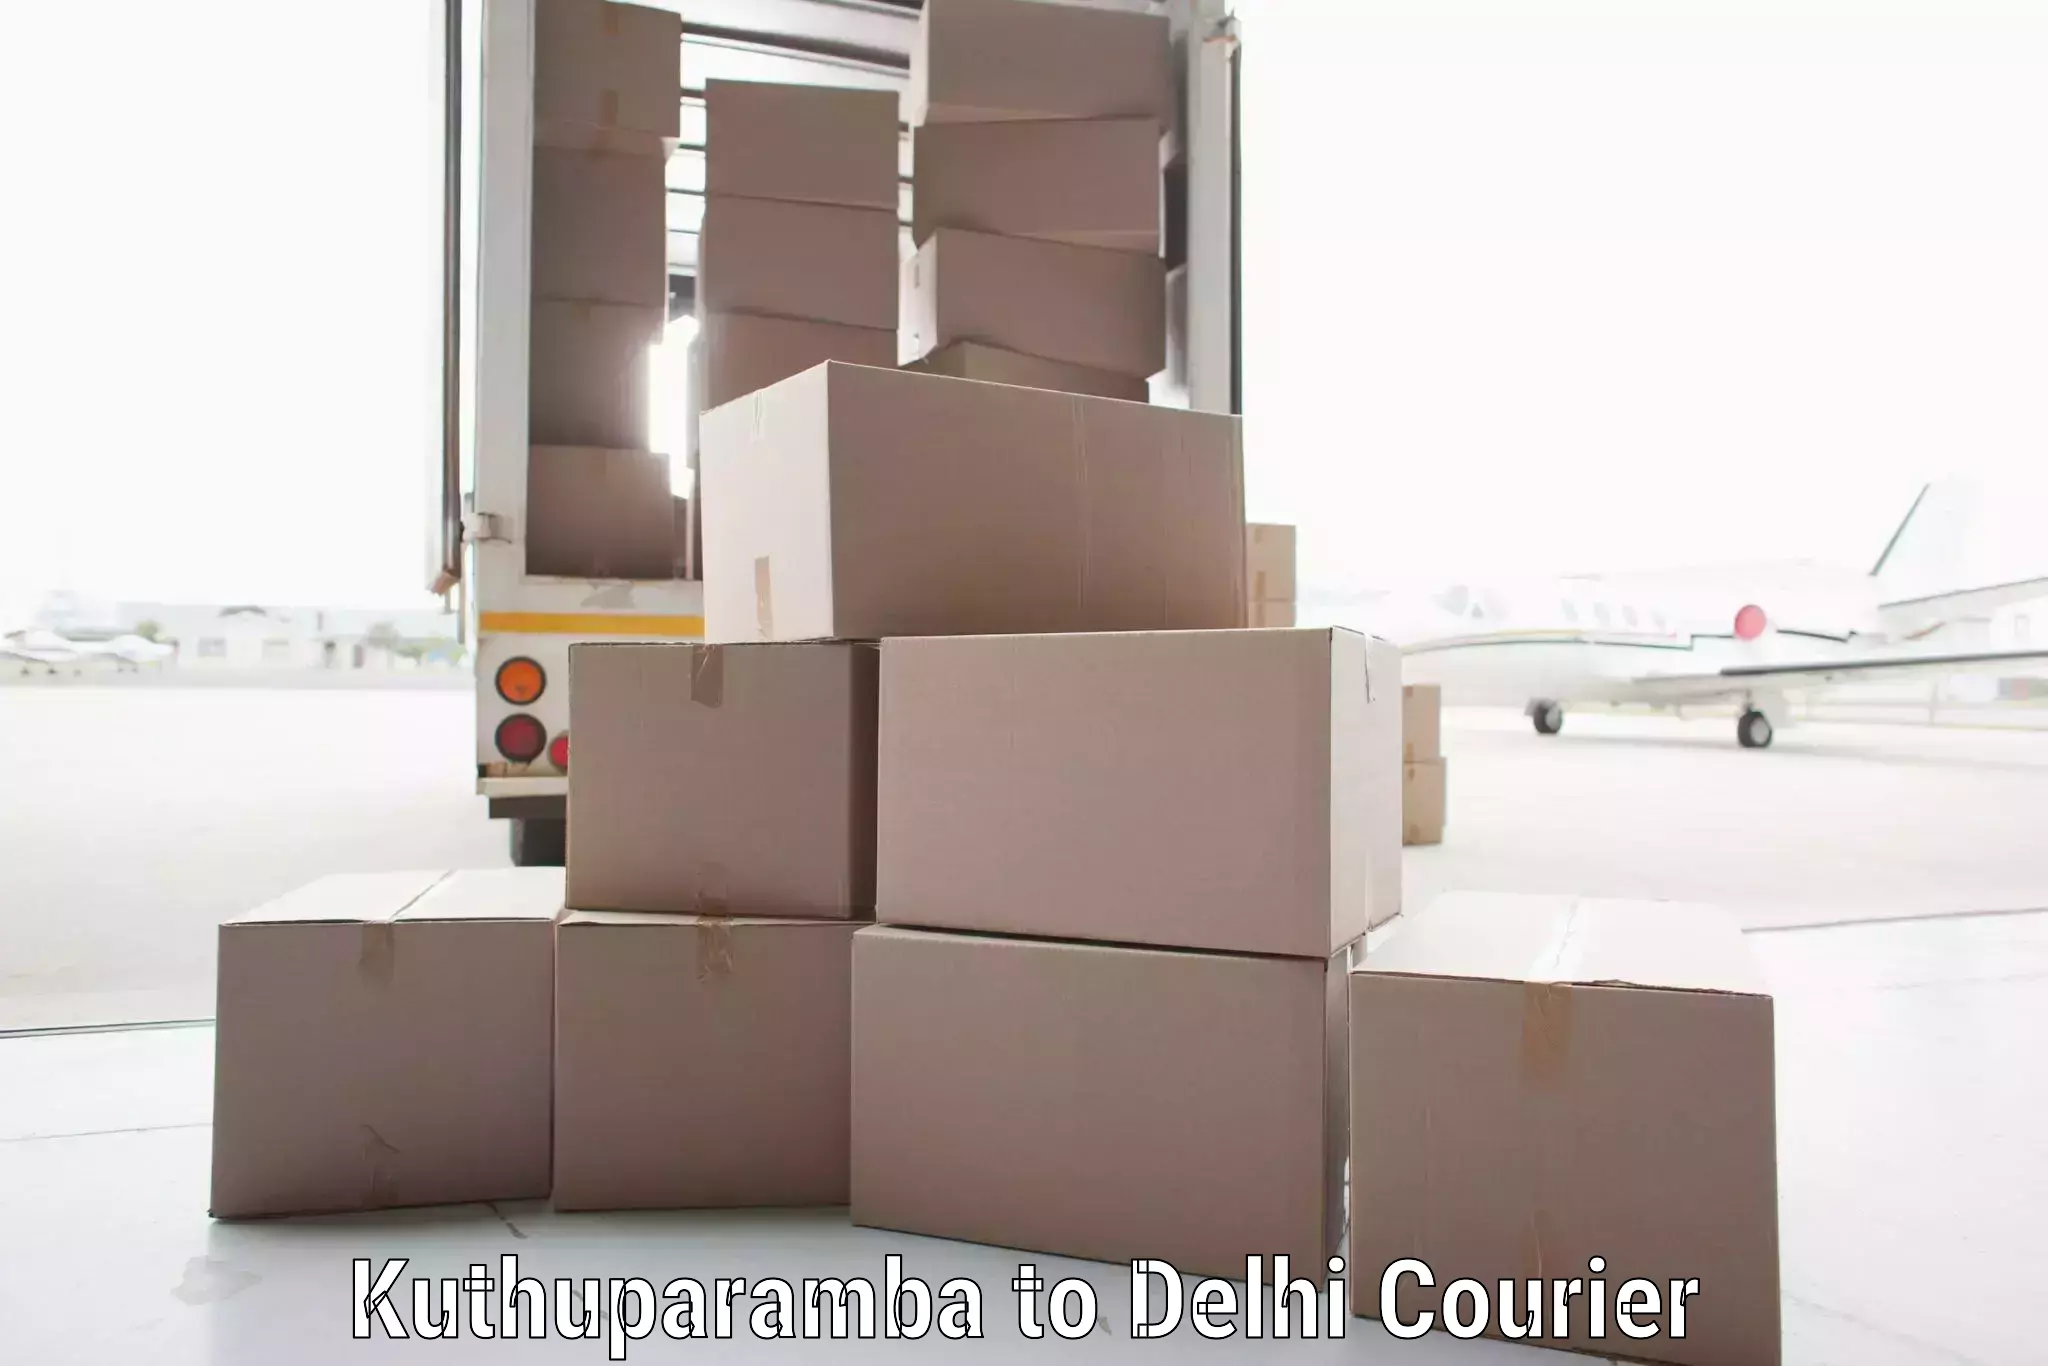 Affordable shipping solutions Kuthuparamba to NIT Delhi